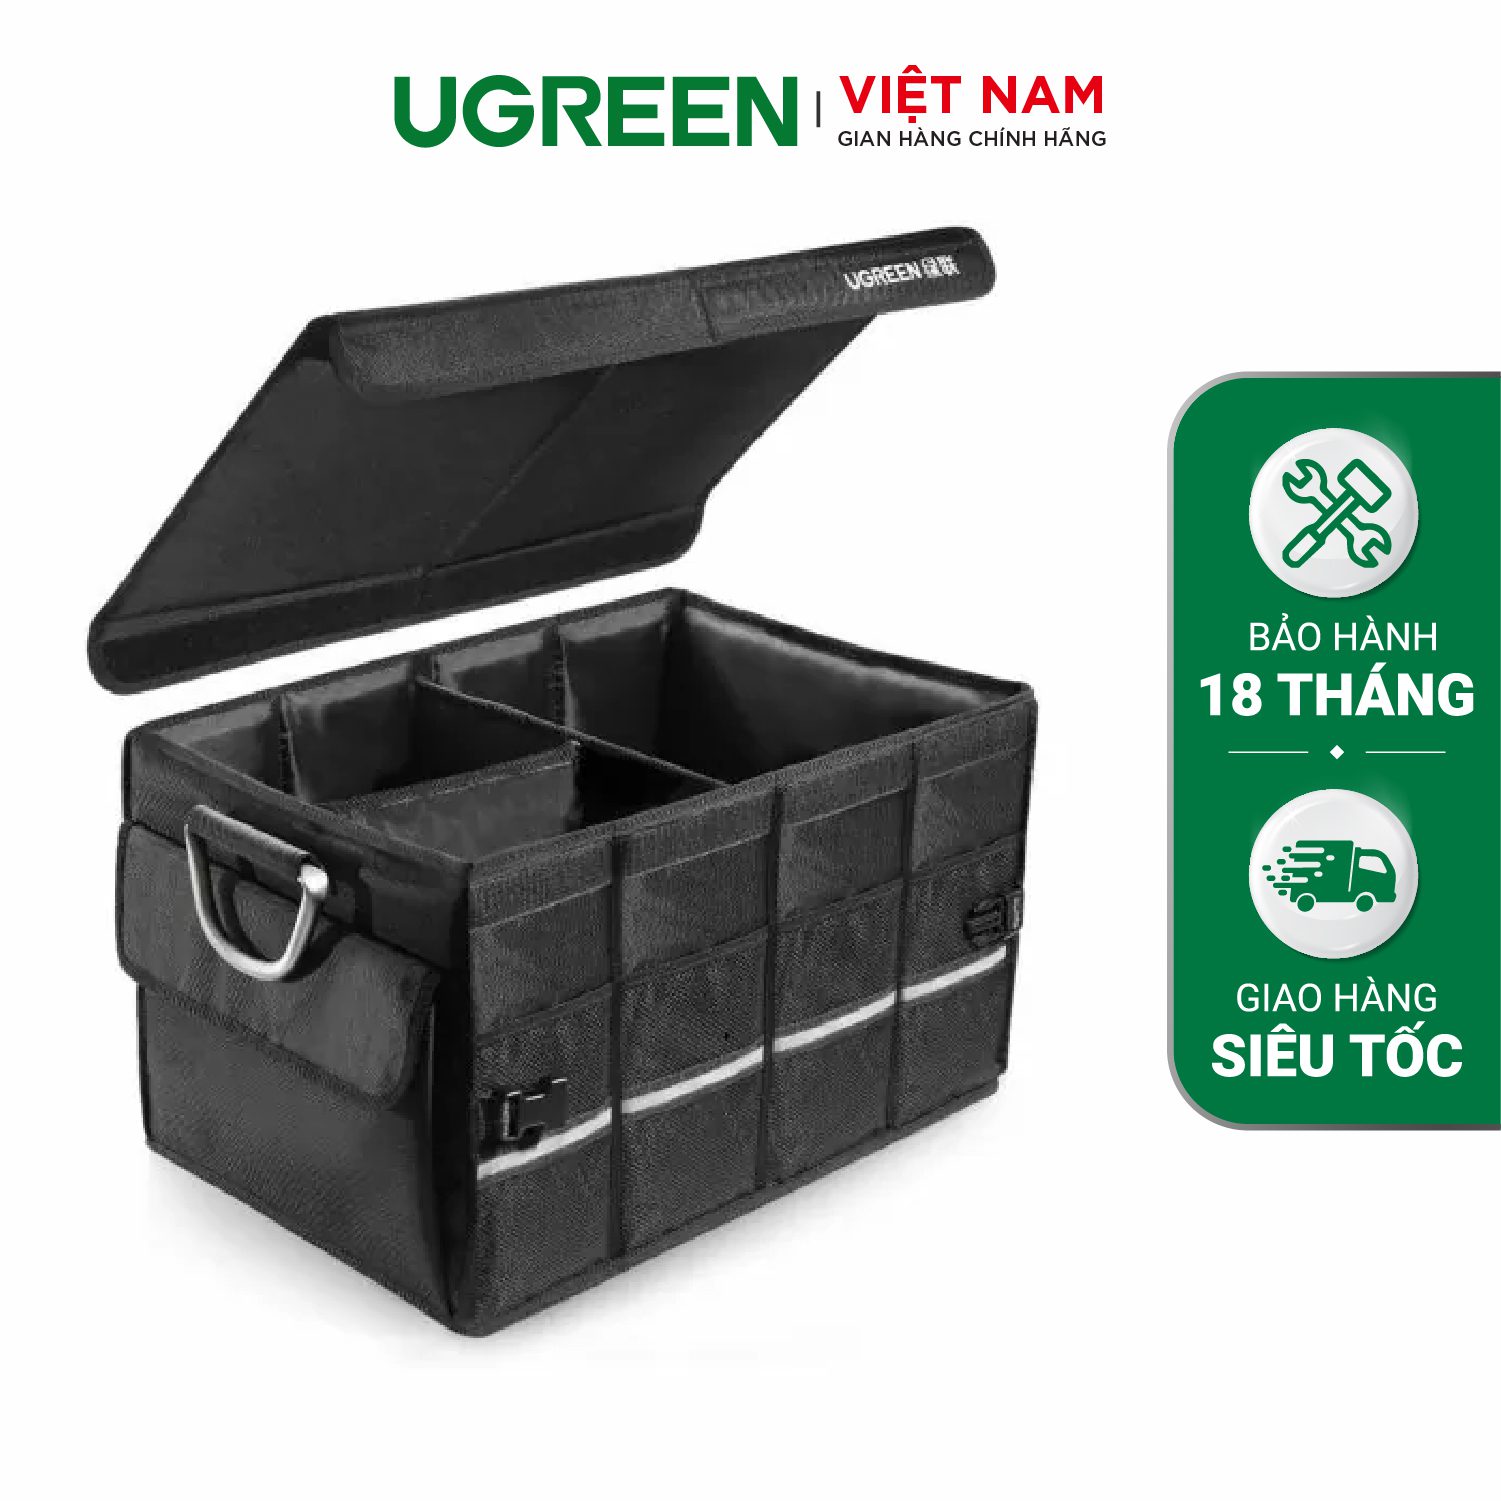 Túi đựng dụng cụ UGREEN 80710 - Kích thước 52 x 35 x 30cm - Chống thấm nước - Khung nhôm chắc chắn, chứa tốt vật liệu nặng – Ugreen Việt Nam